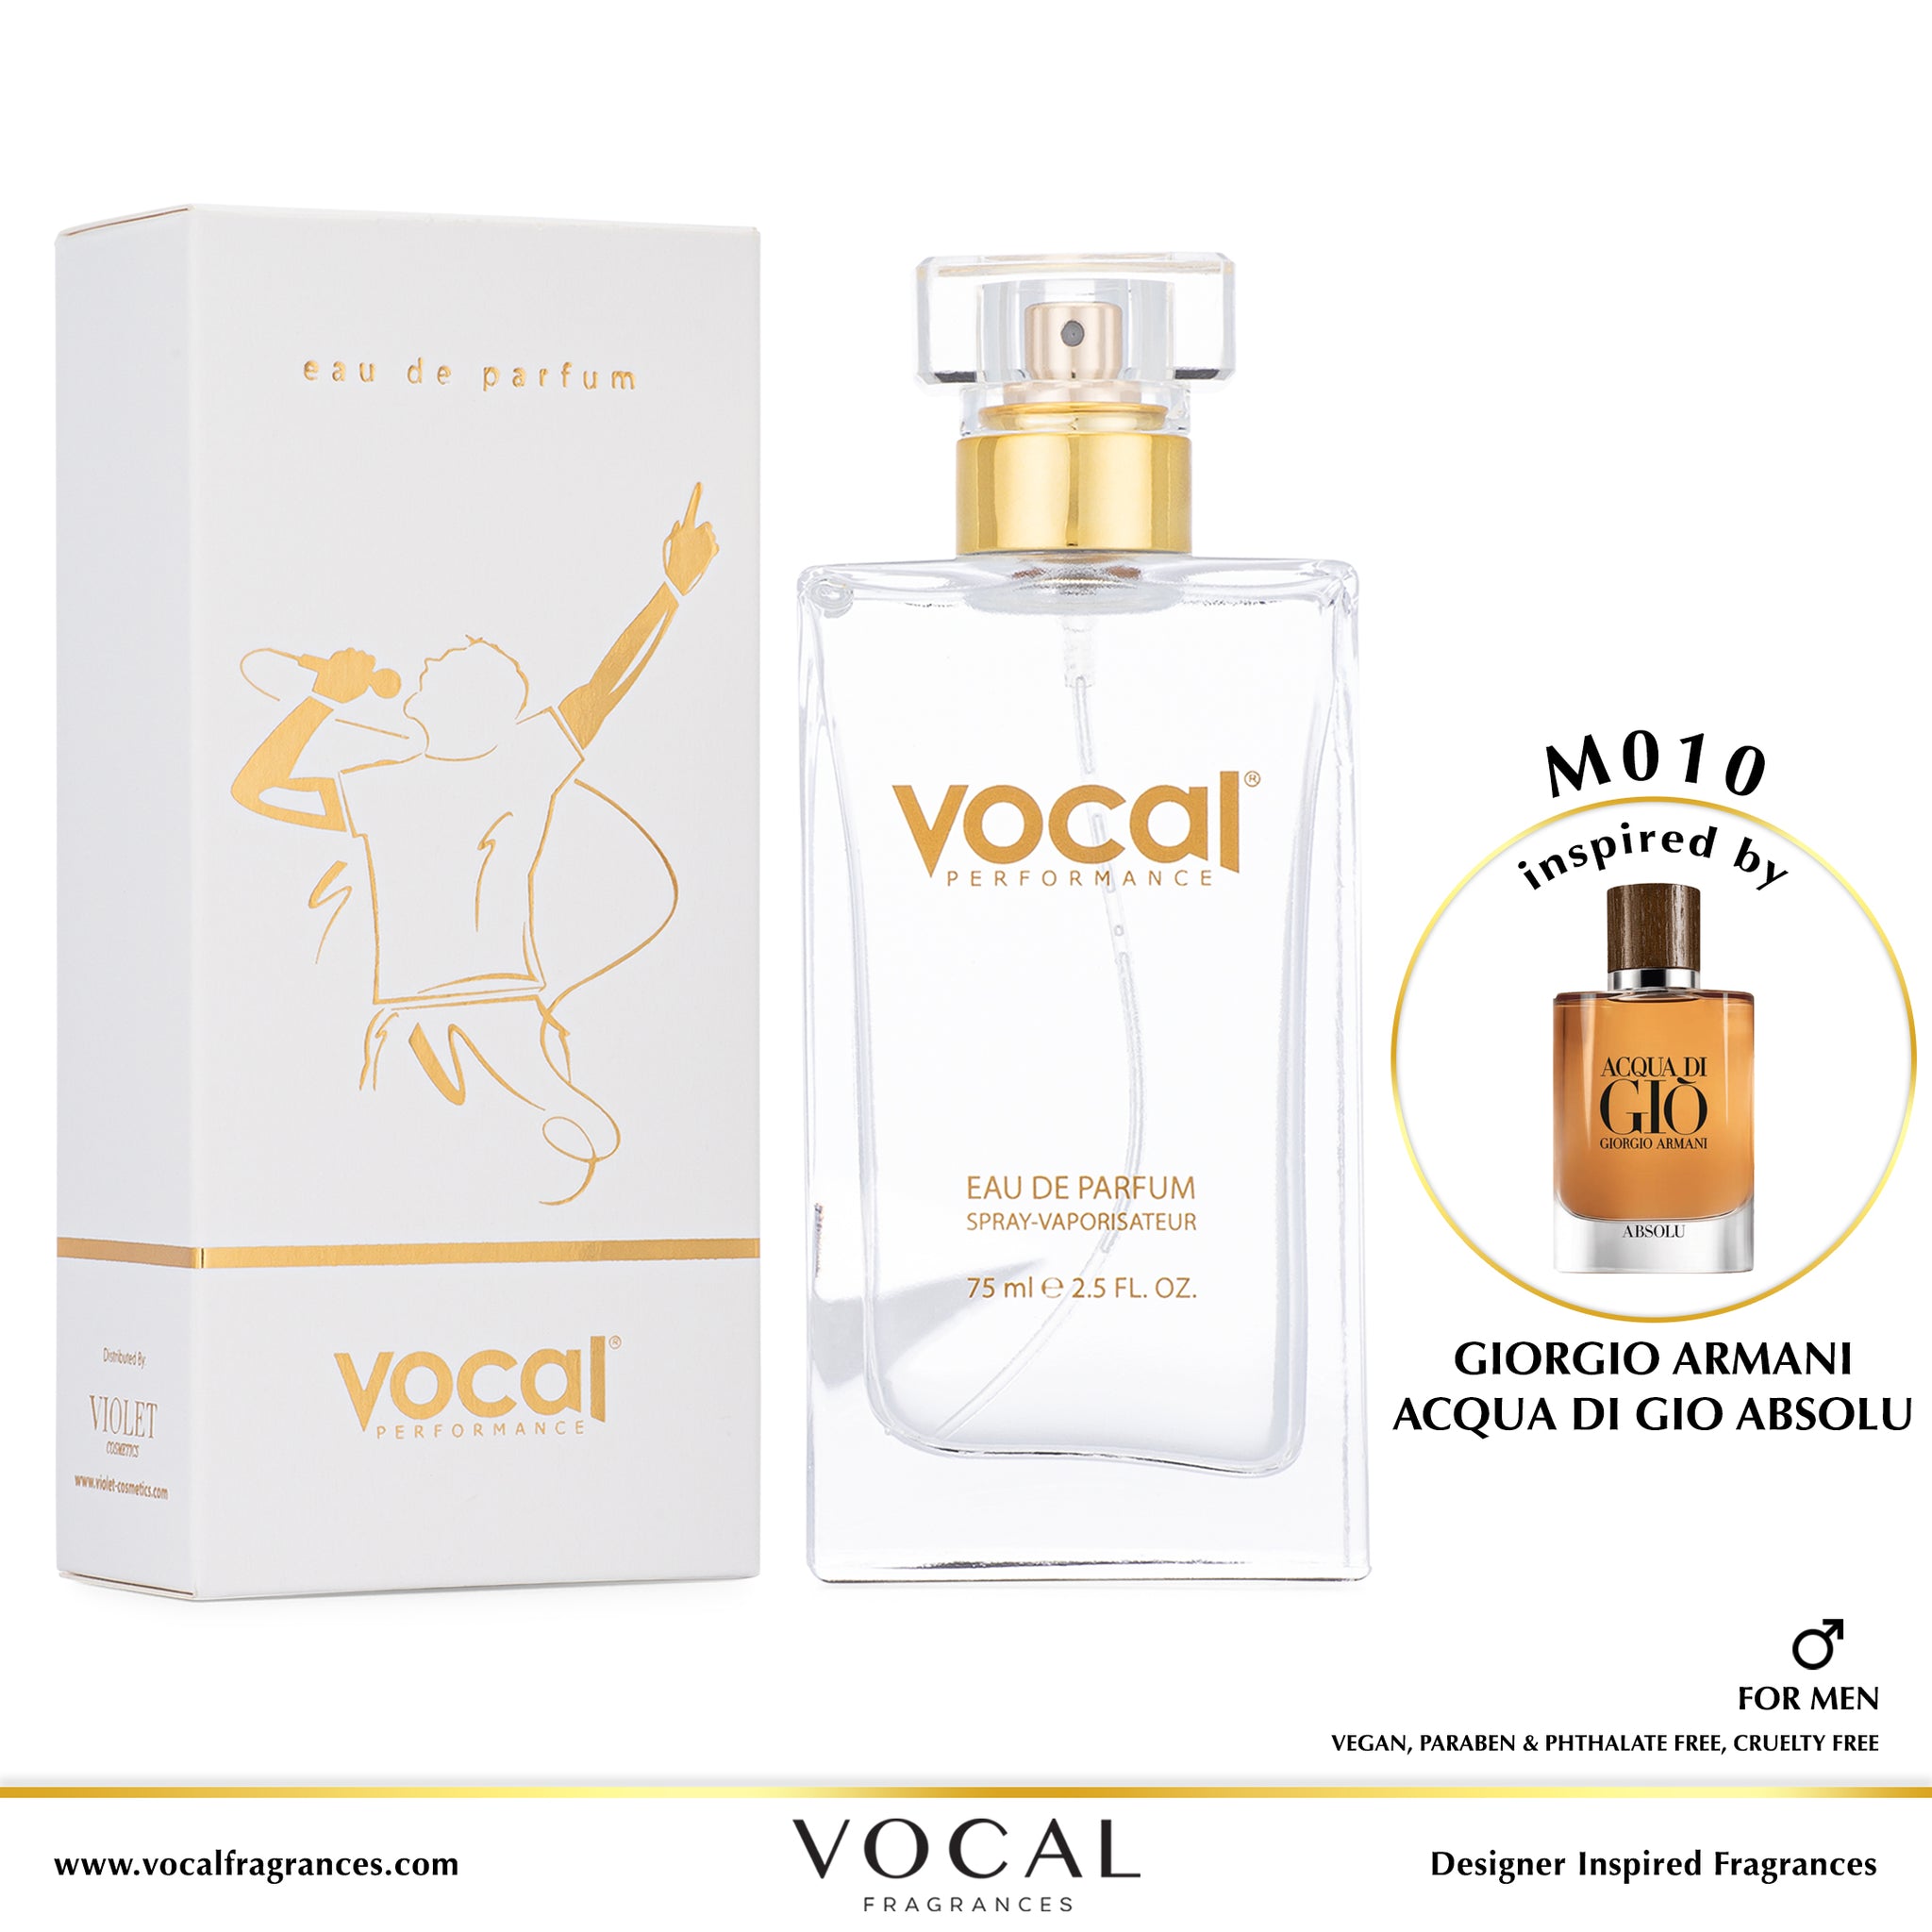 M010 Vocal Performance Eau De Parfum For Men Inspired by Giorgio Armani Acqua Di Gio Absolu